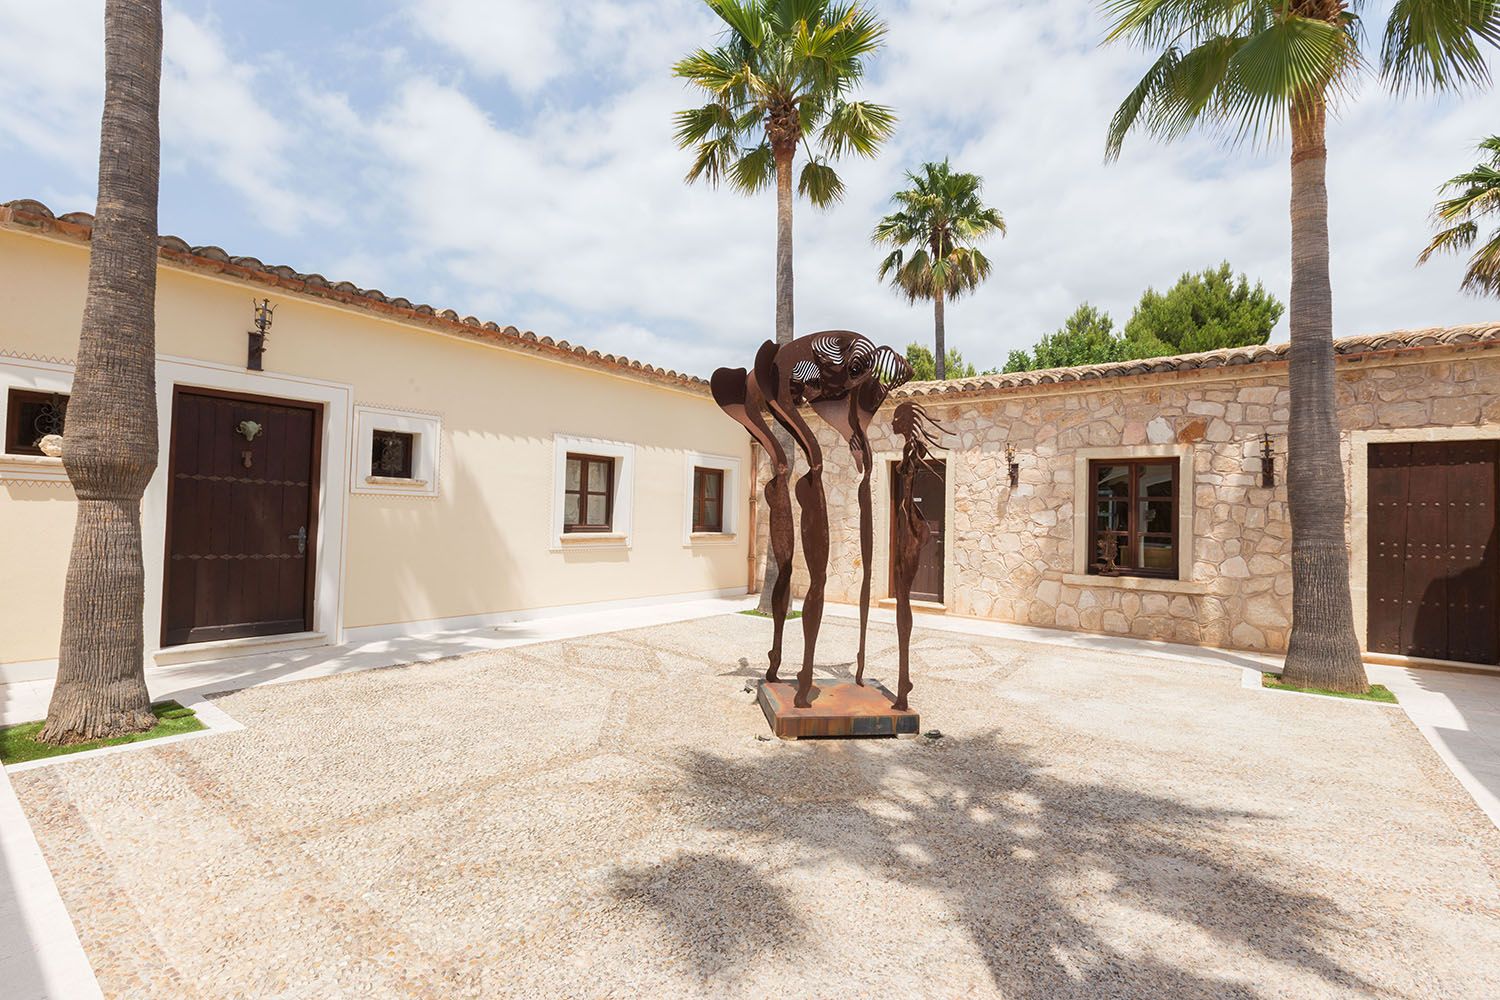 Jürgen Klopp quiere demoler la casa que se ha comprado en Mallorca para construir una nueva